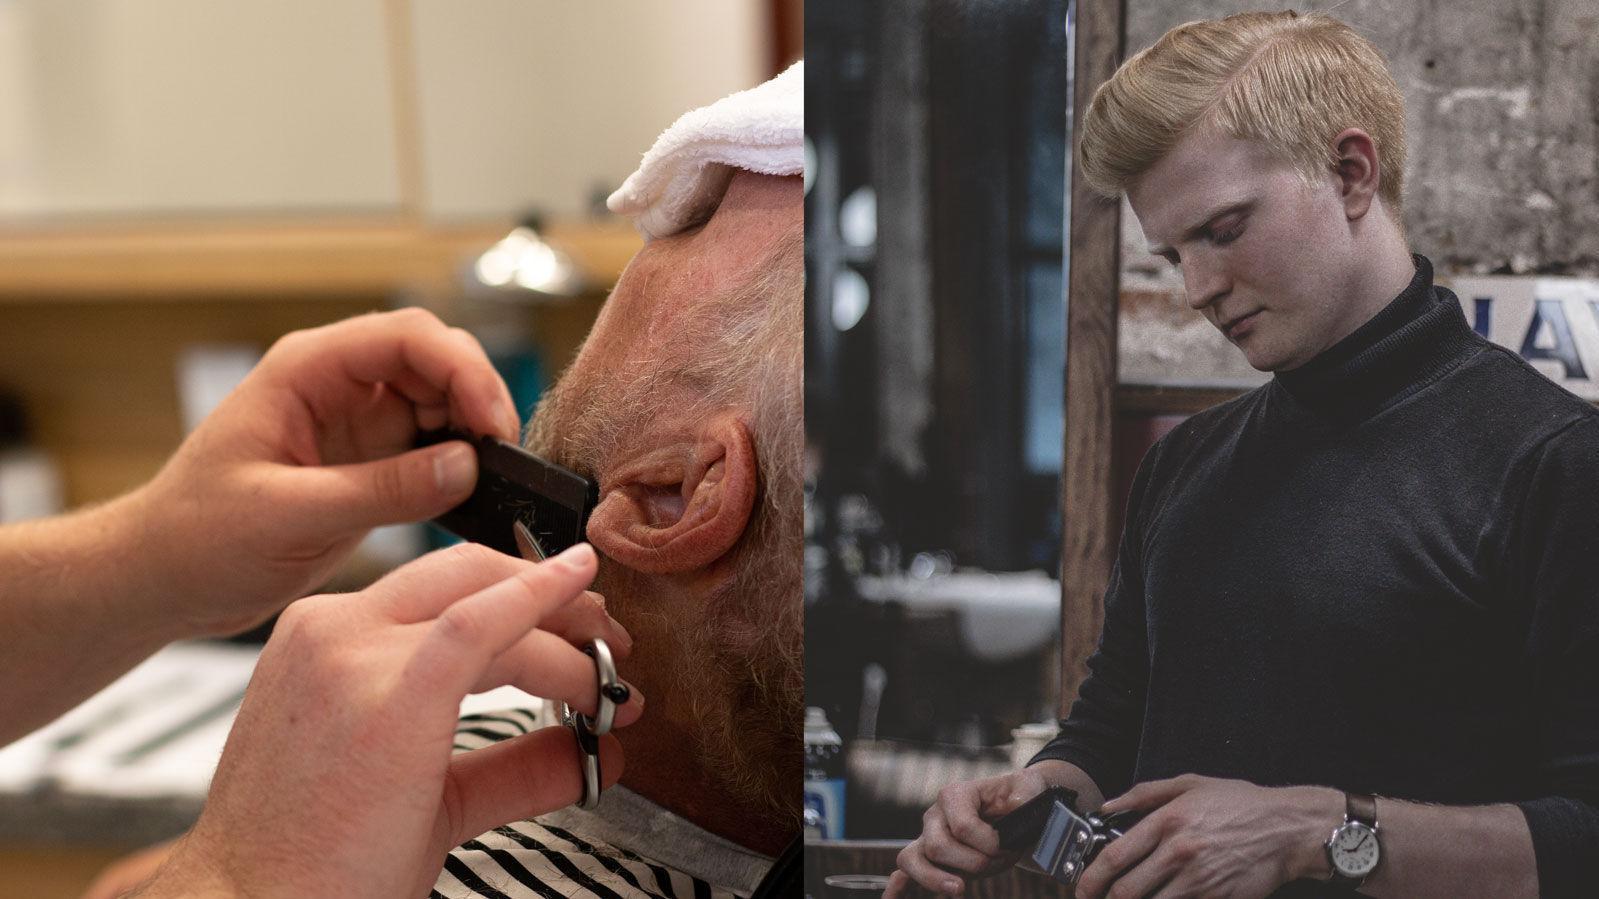 EKSPERTRÅD: Barberer Marius Stiansen (til høyre) hjelper jevnlig kunder med å forme både skjegg og frisyre – og deler tips med de som vil prøve seg på egenhånd. Foto: Privat / Pels Pels